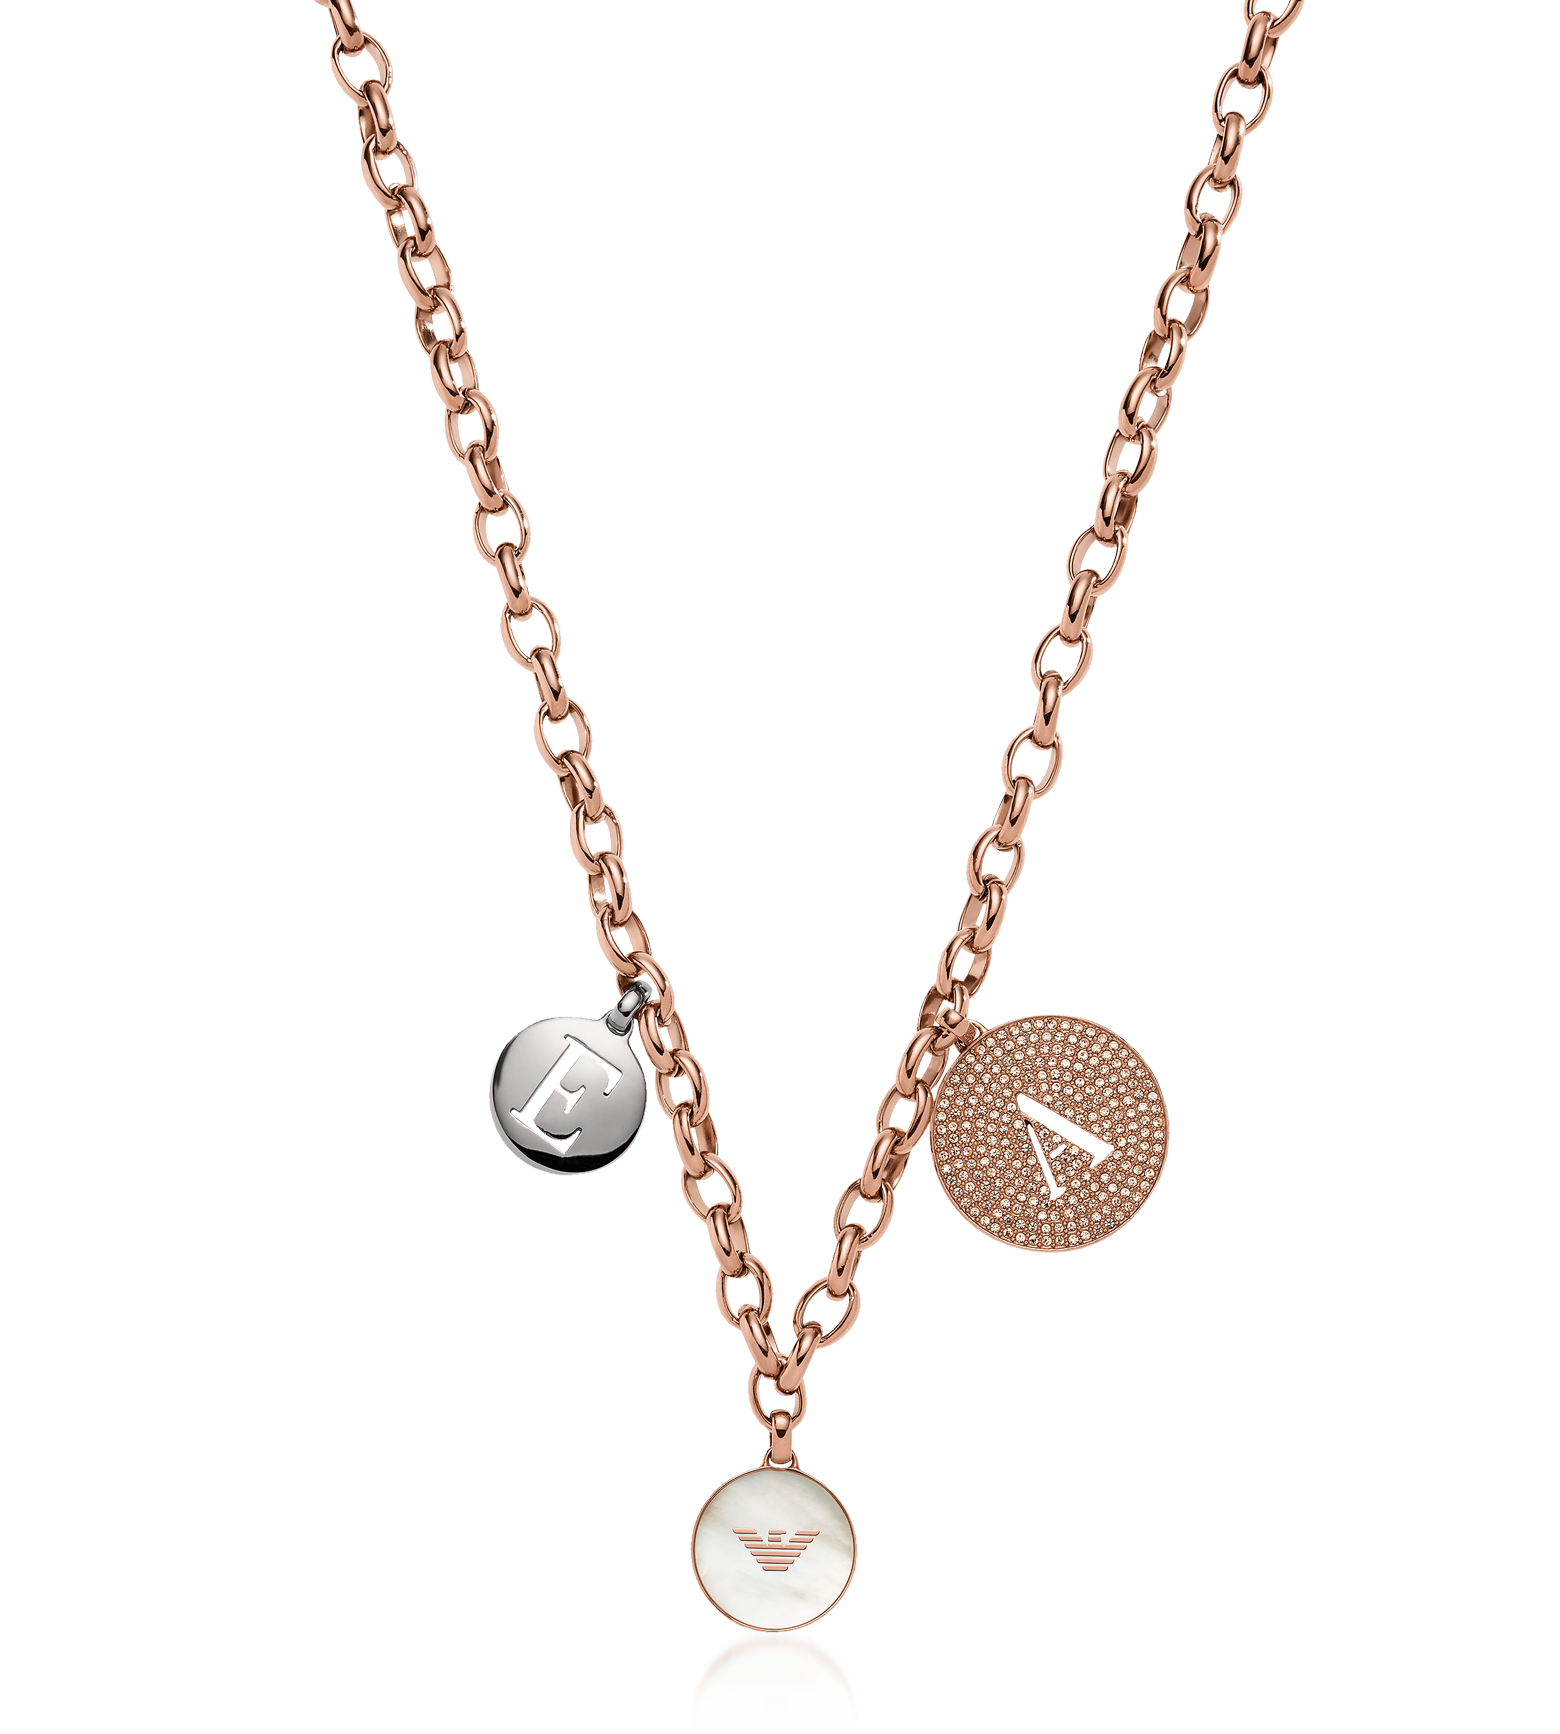 armani necklace sale